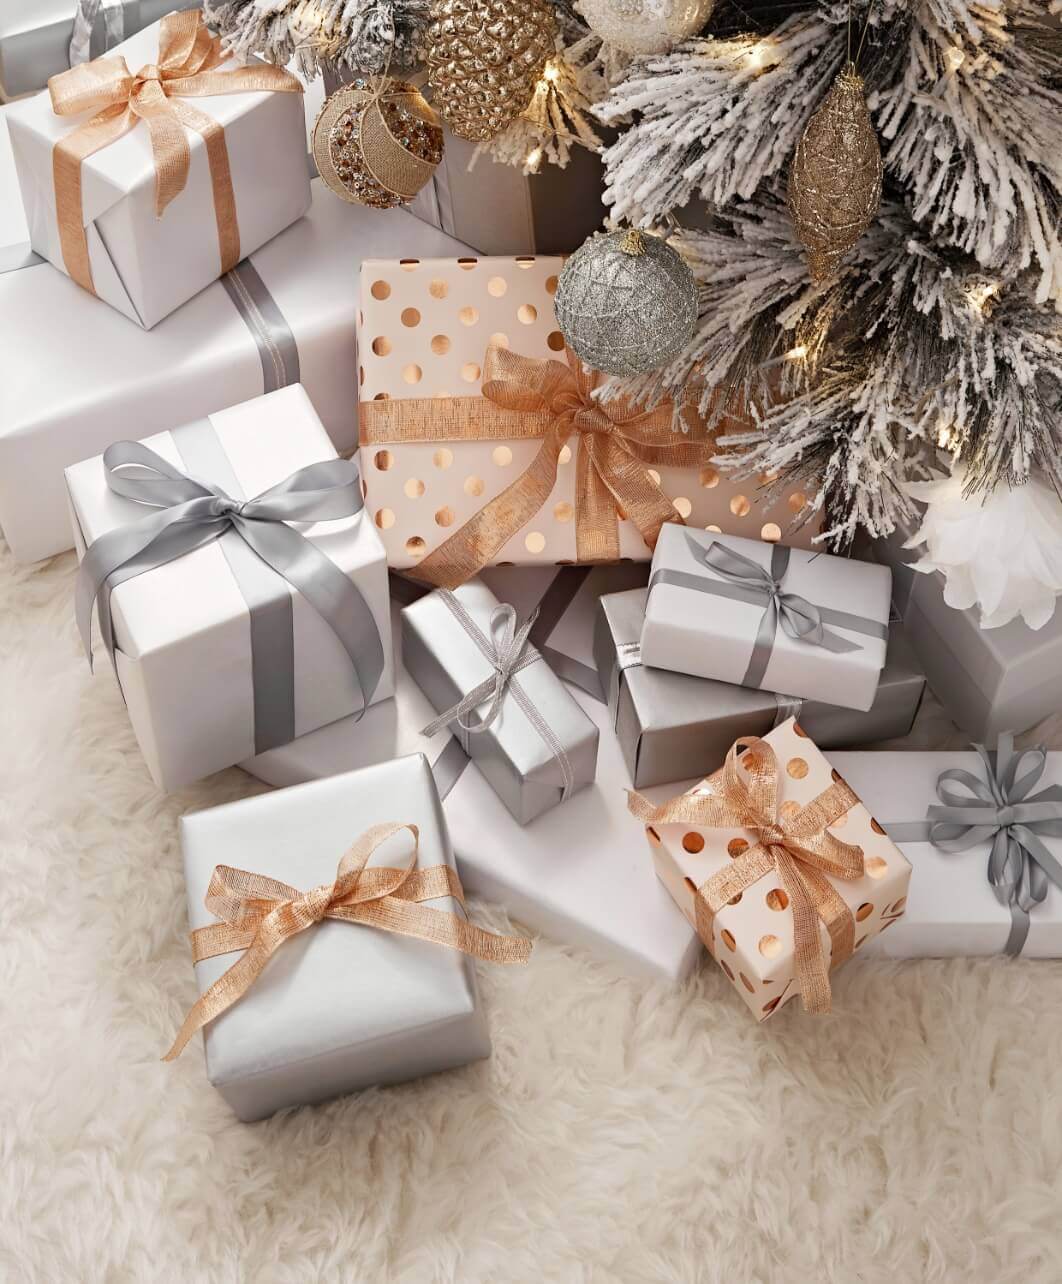 Christmas gifts